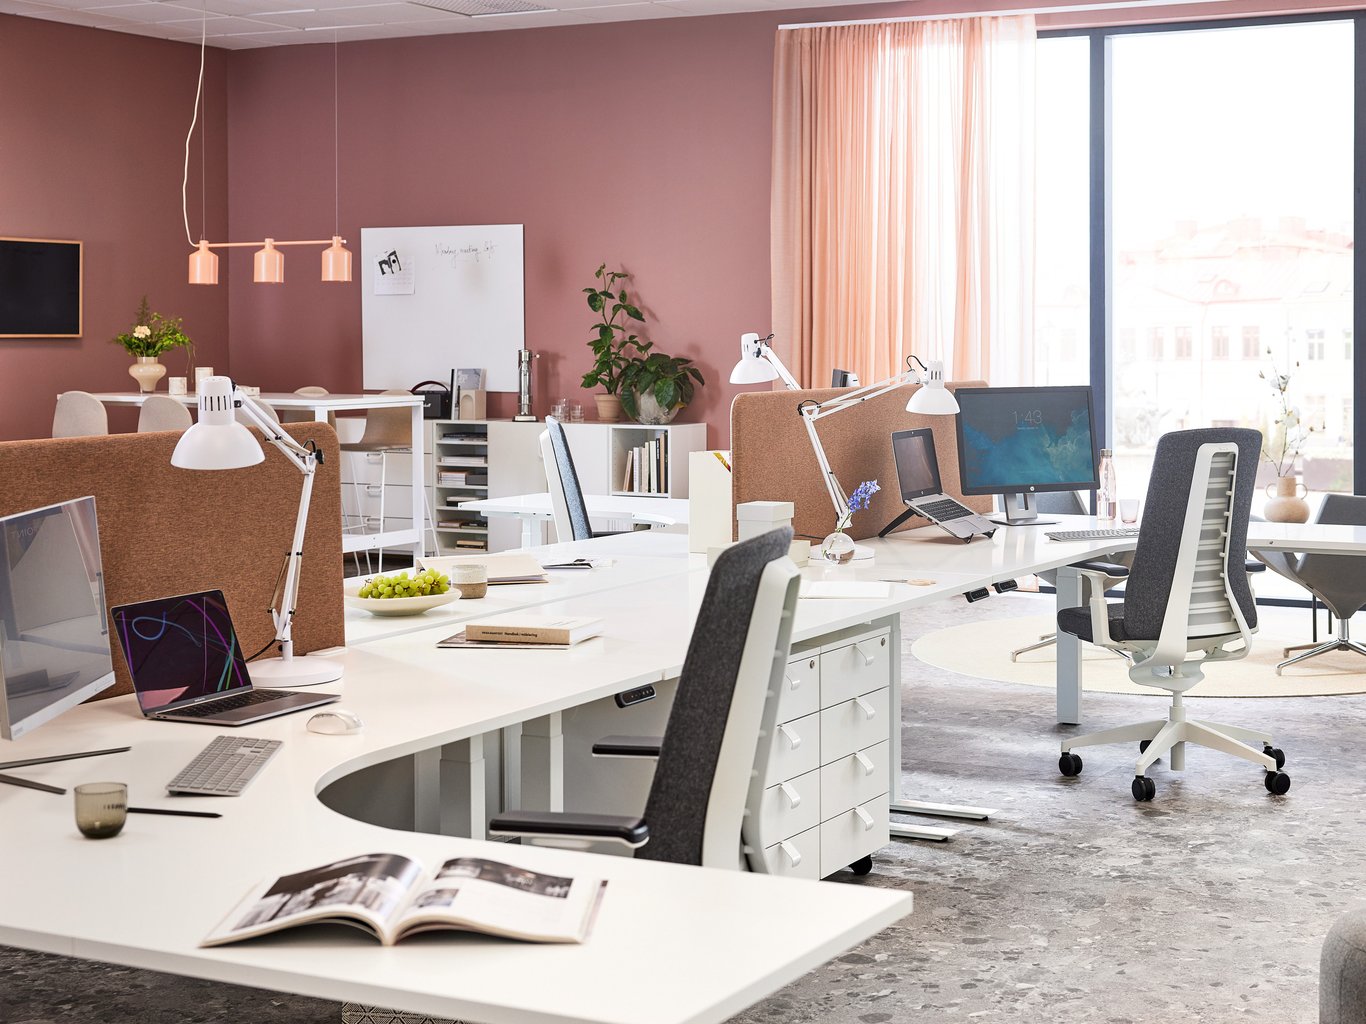 Storrumskontor - hvordan indretter du et åbent kontorlandskab?